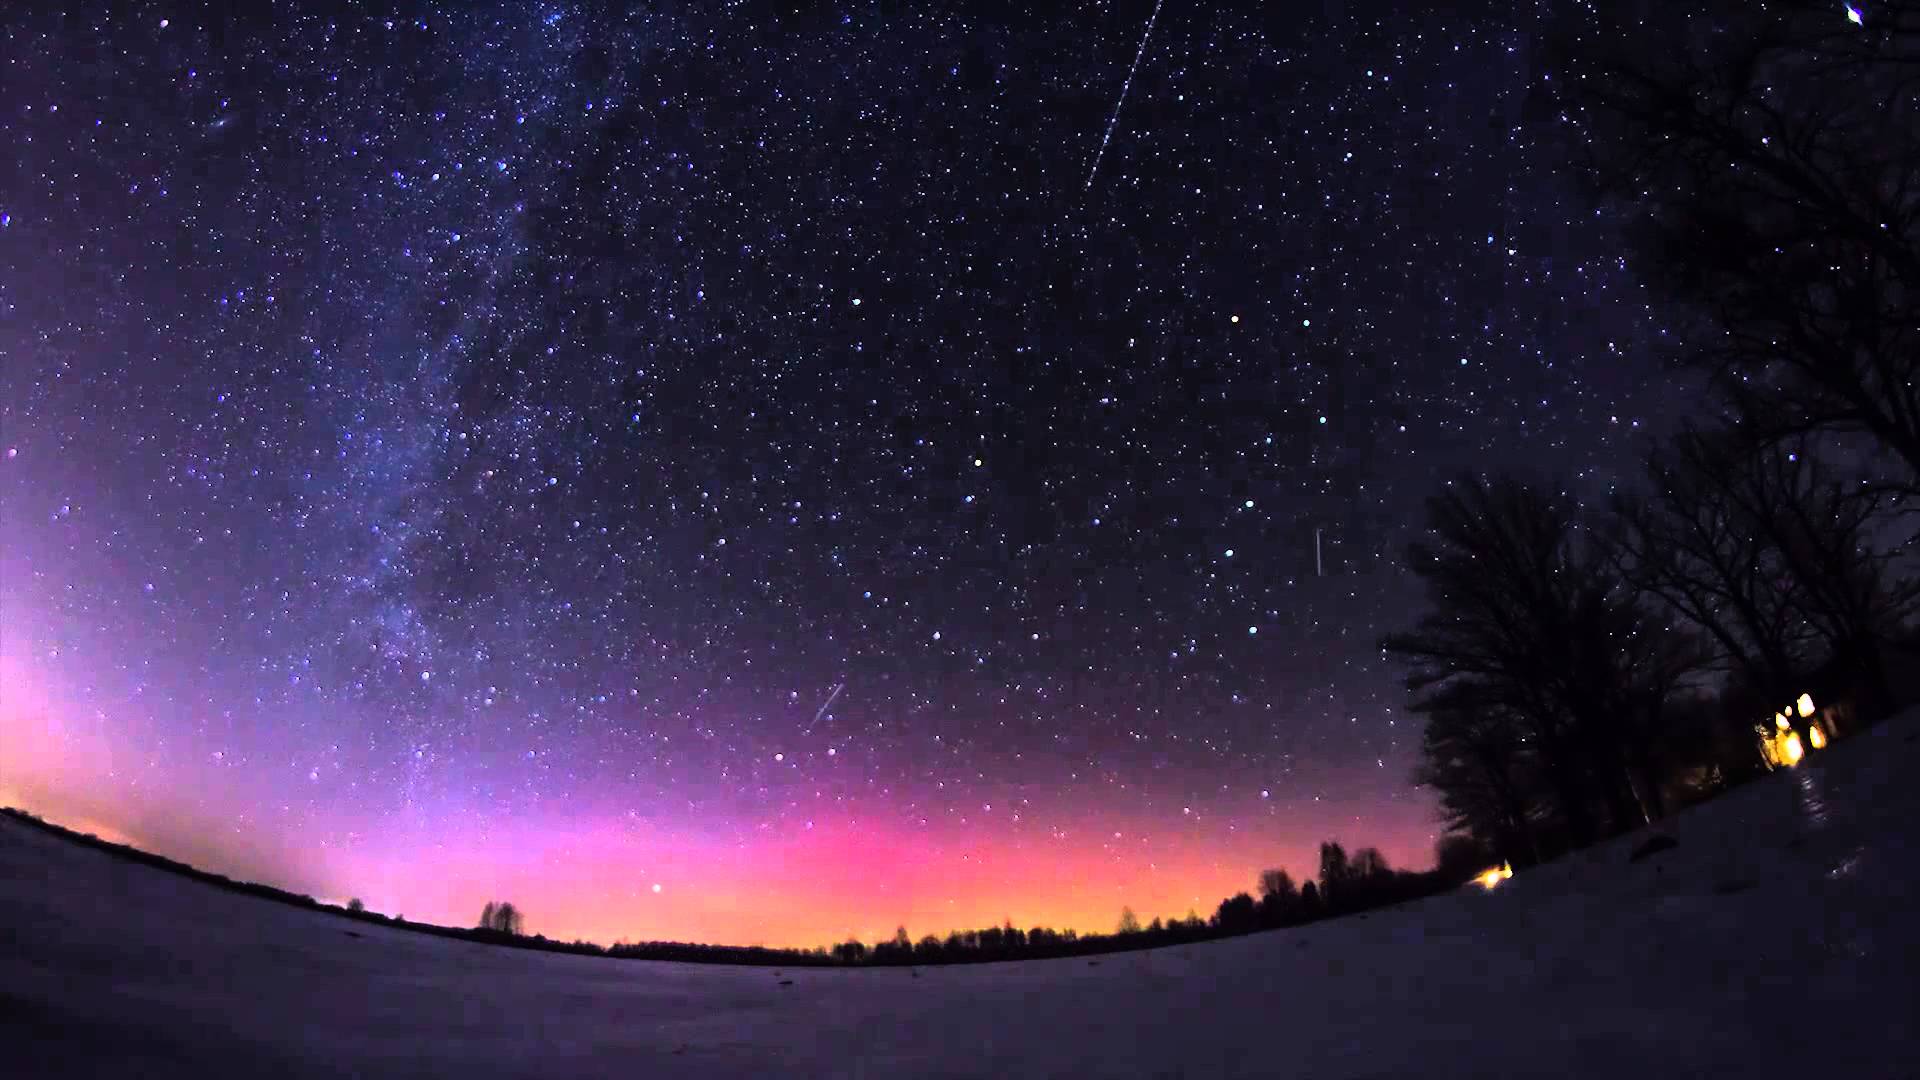 VIDEO: Super! Latvijā novērota ziemeļblāzma! (Northern Lights in Latvia – Time-Lapse)